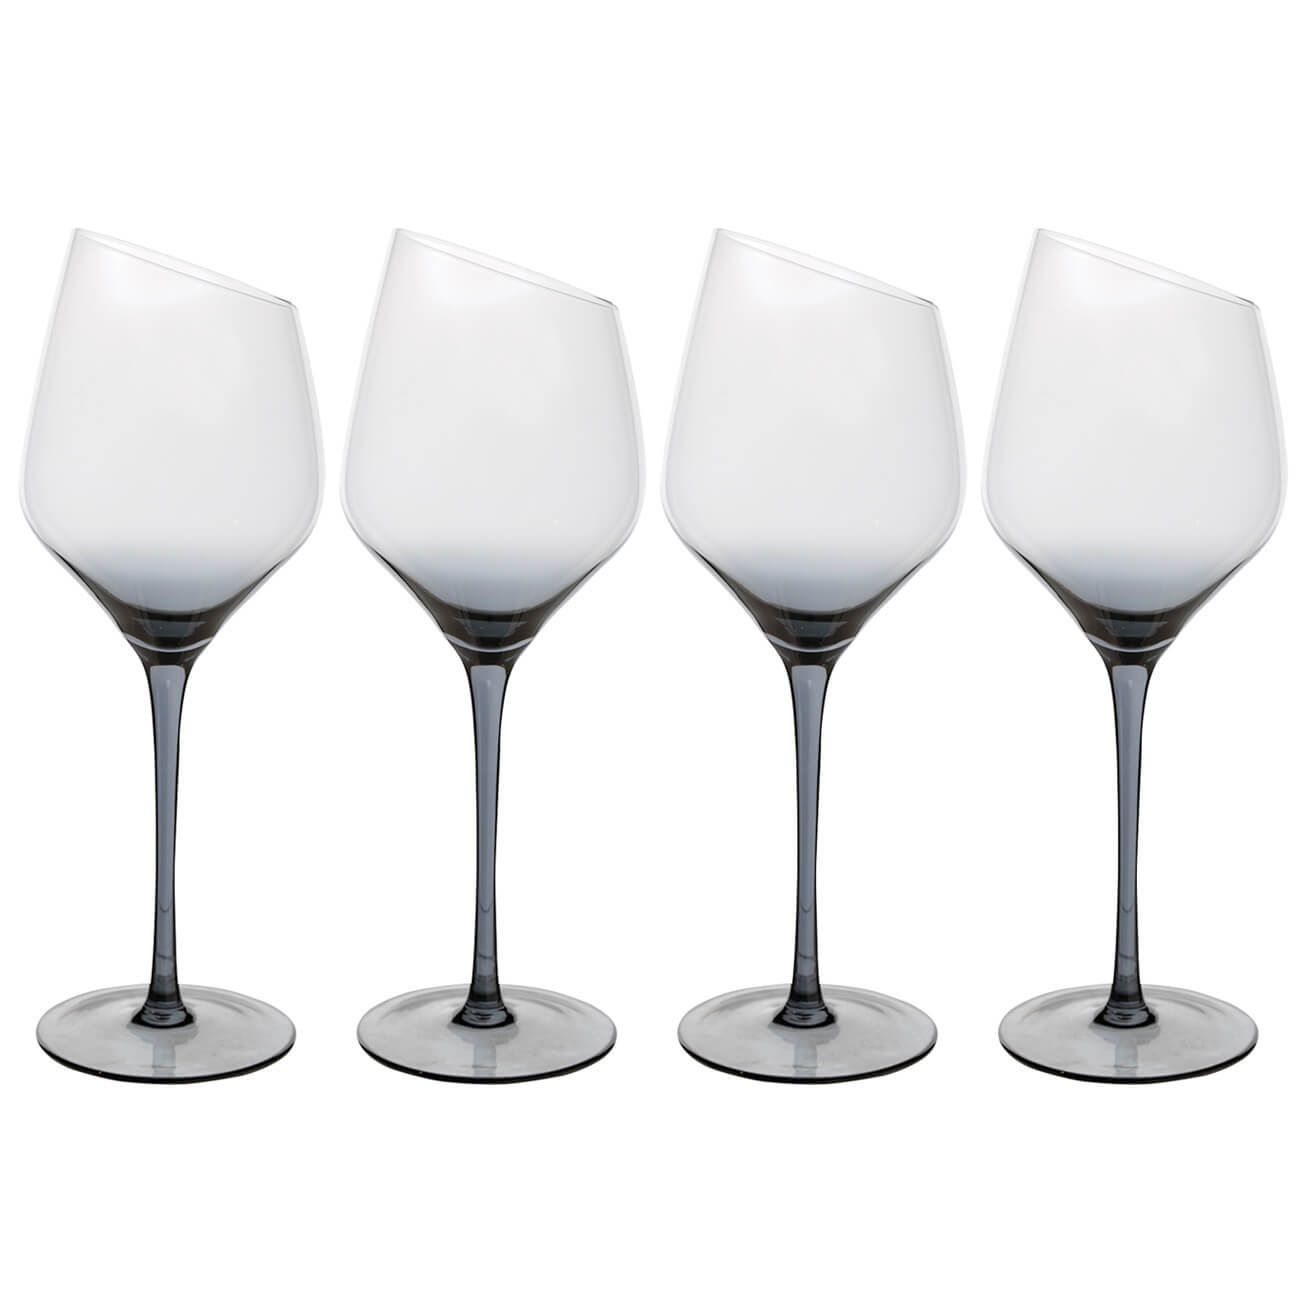 Бокал для белого вина, 460 мл, 4 шт, стекло, серый, Charm L Color бокал для красного вина 560 мл 4 шт charm l